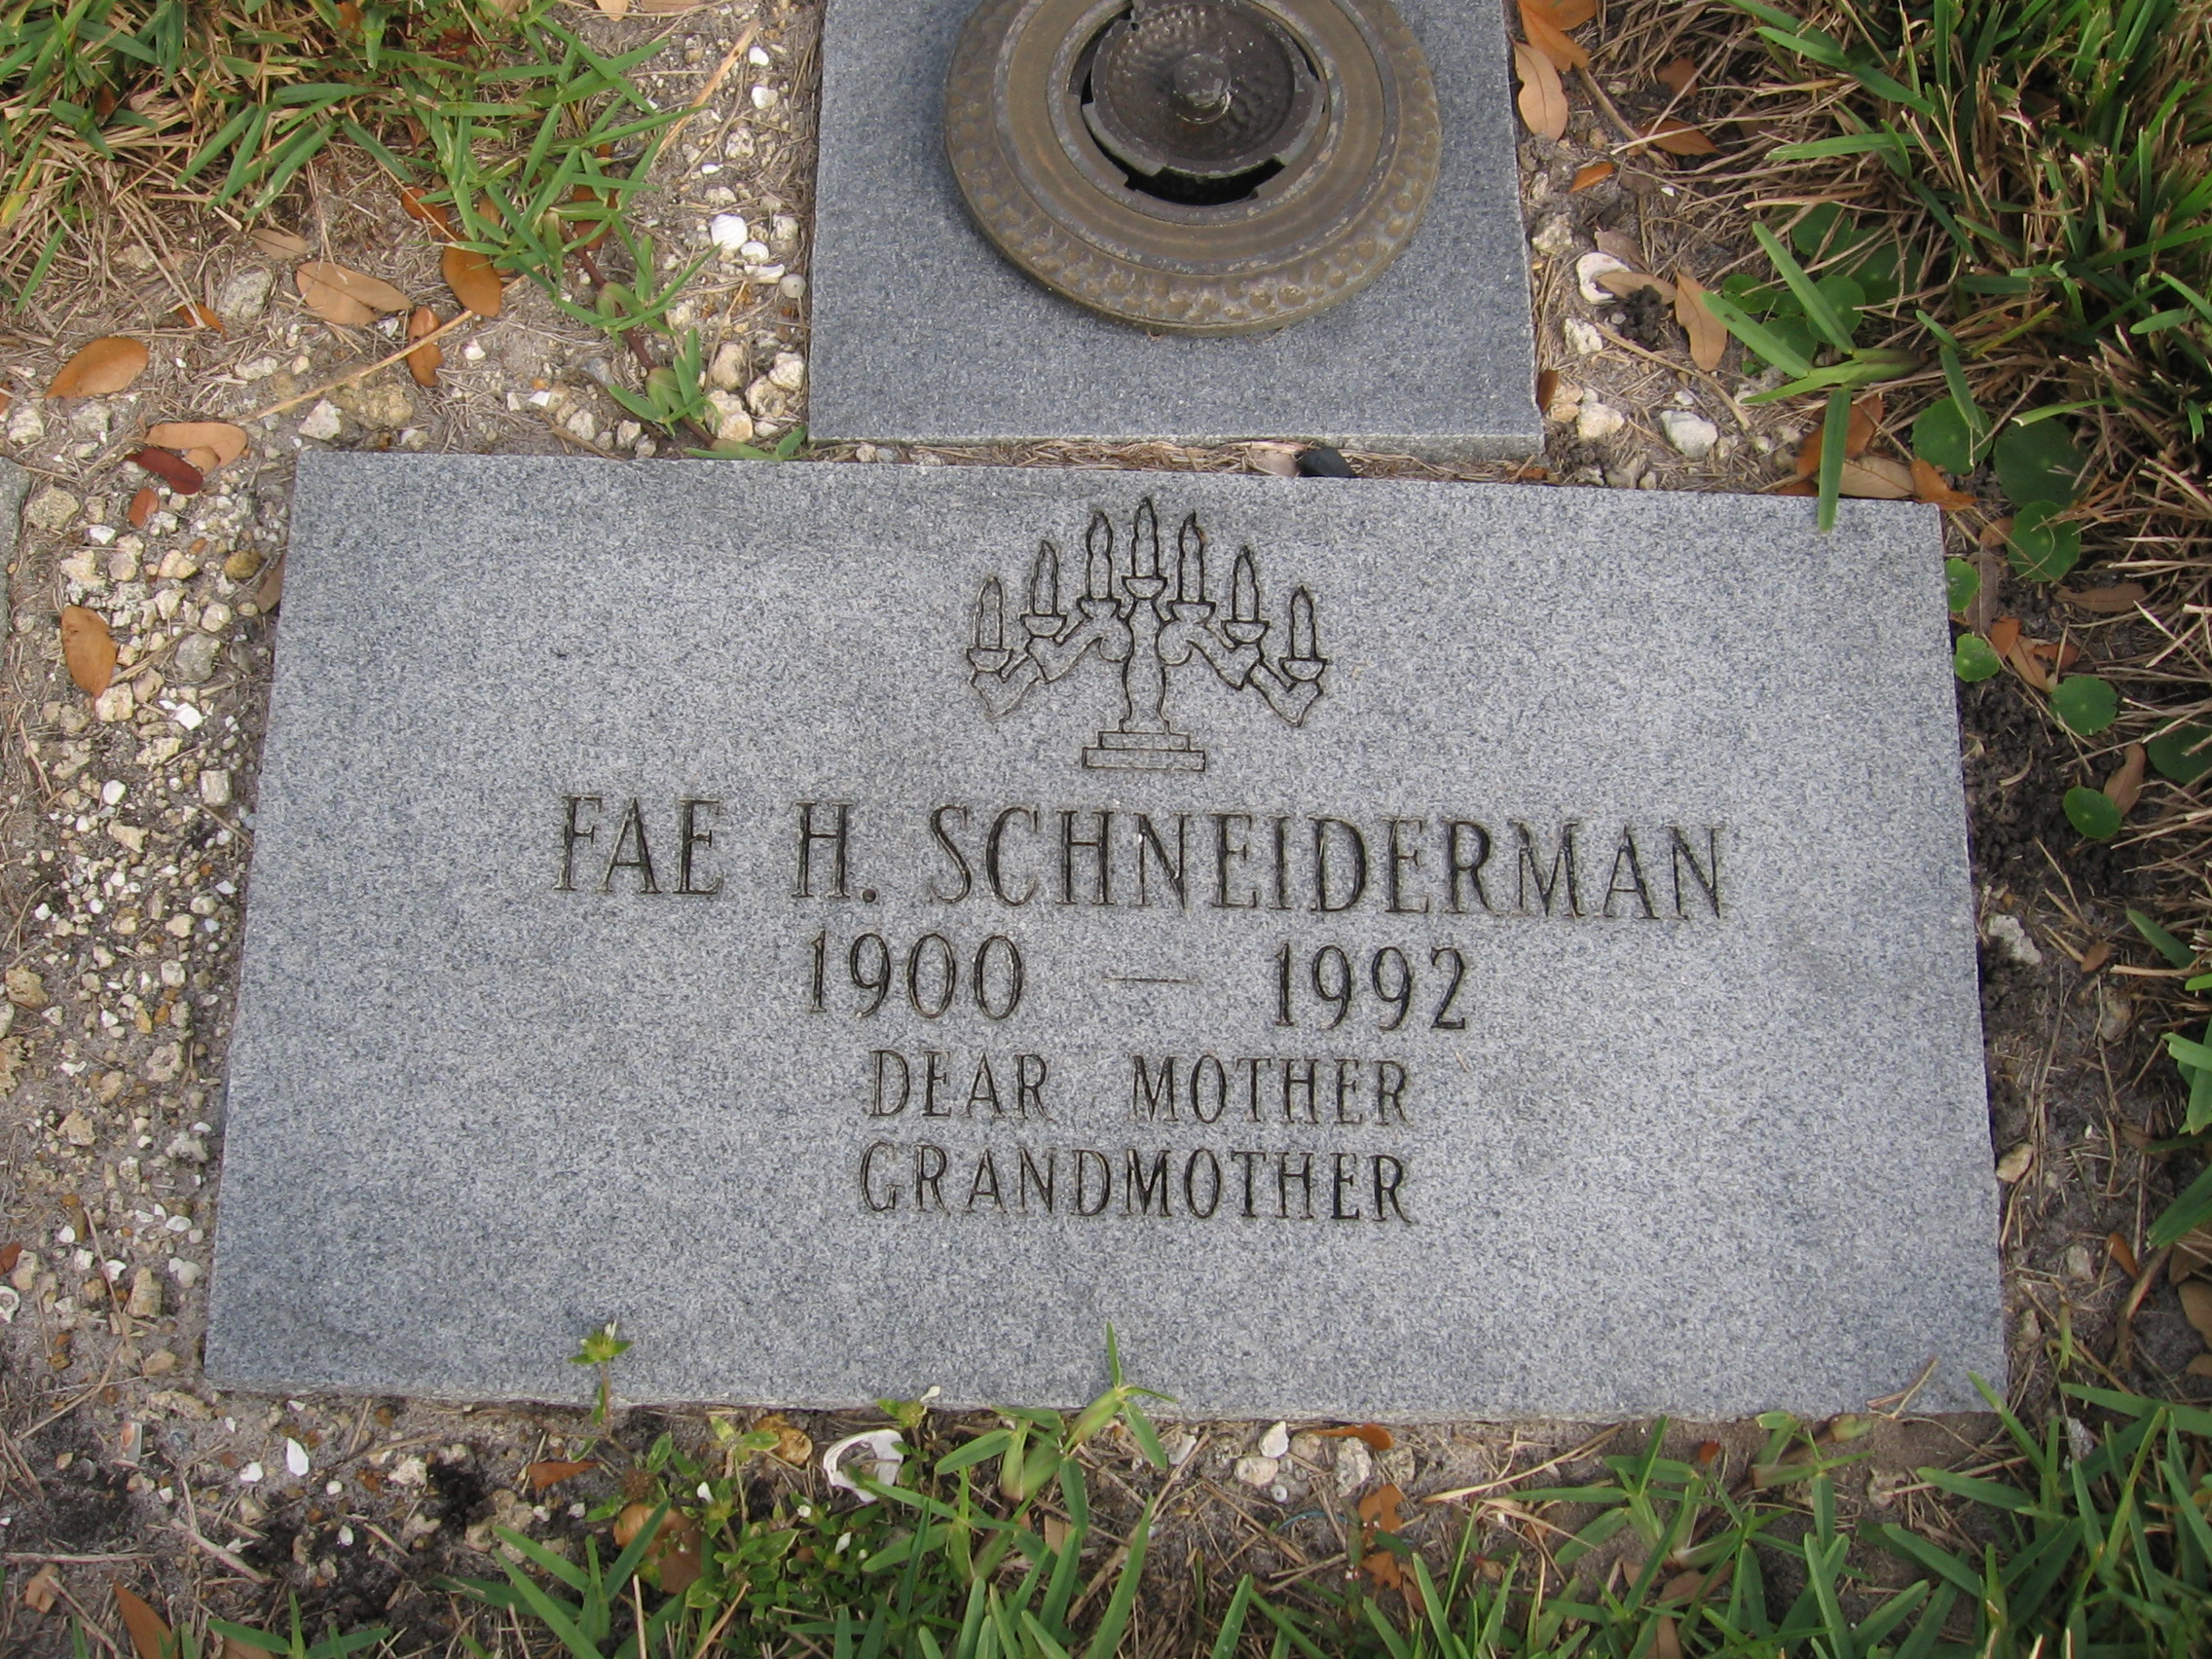 Fae H Schneiderman